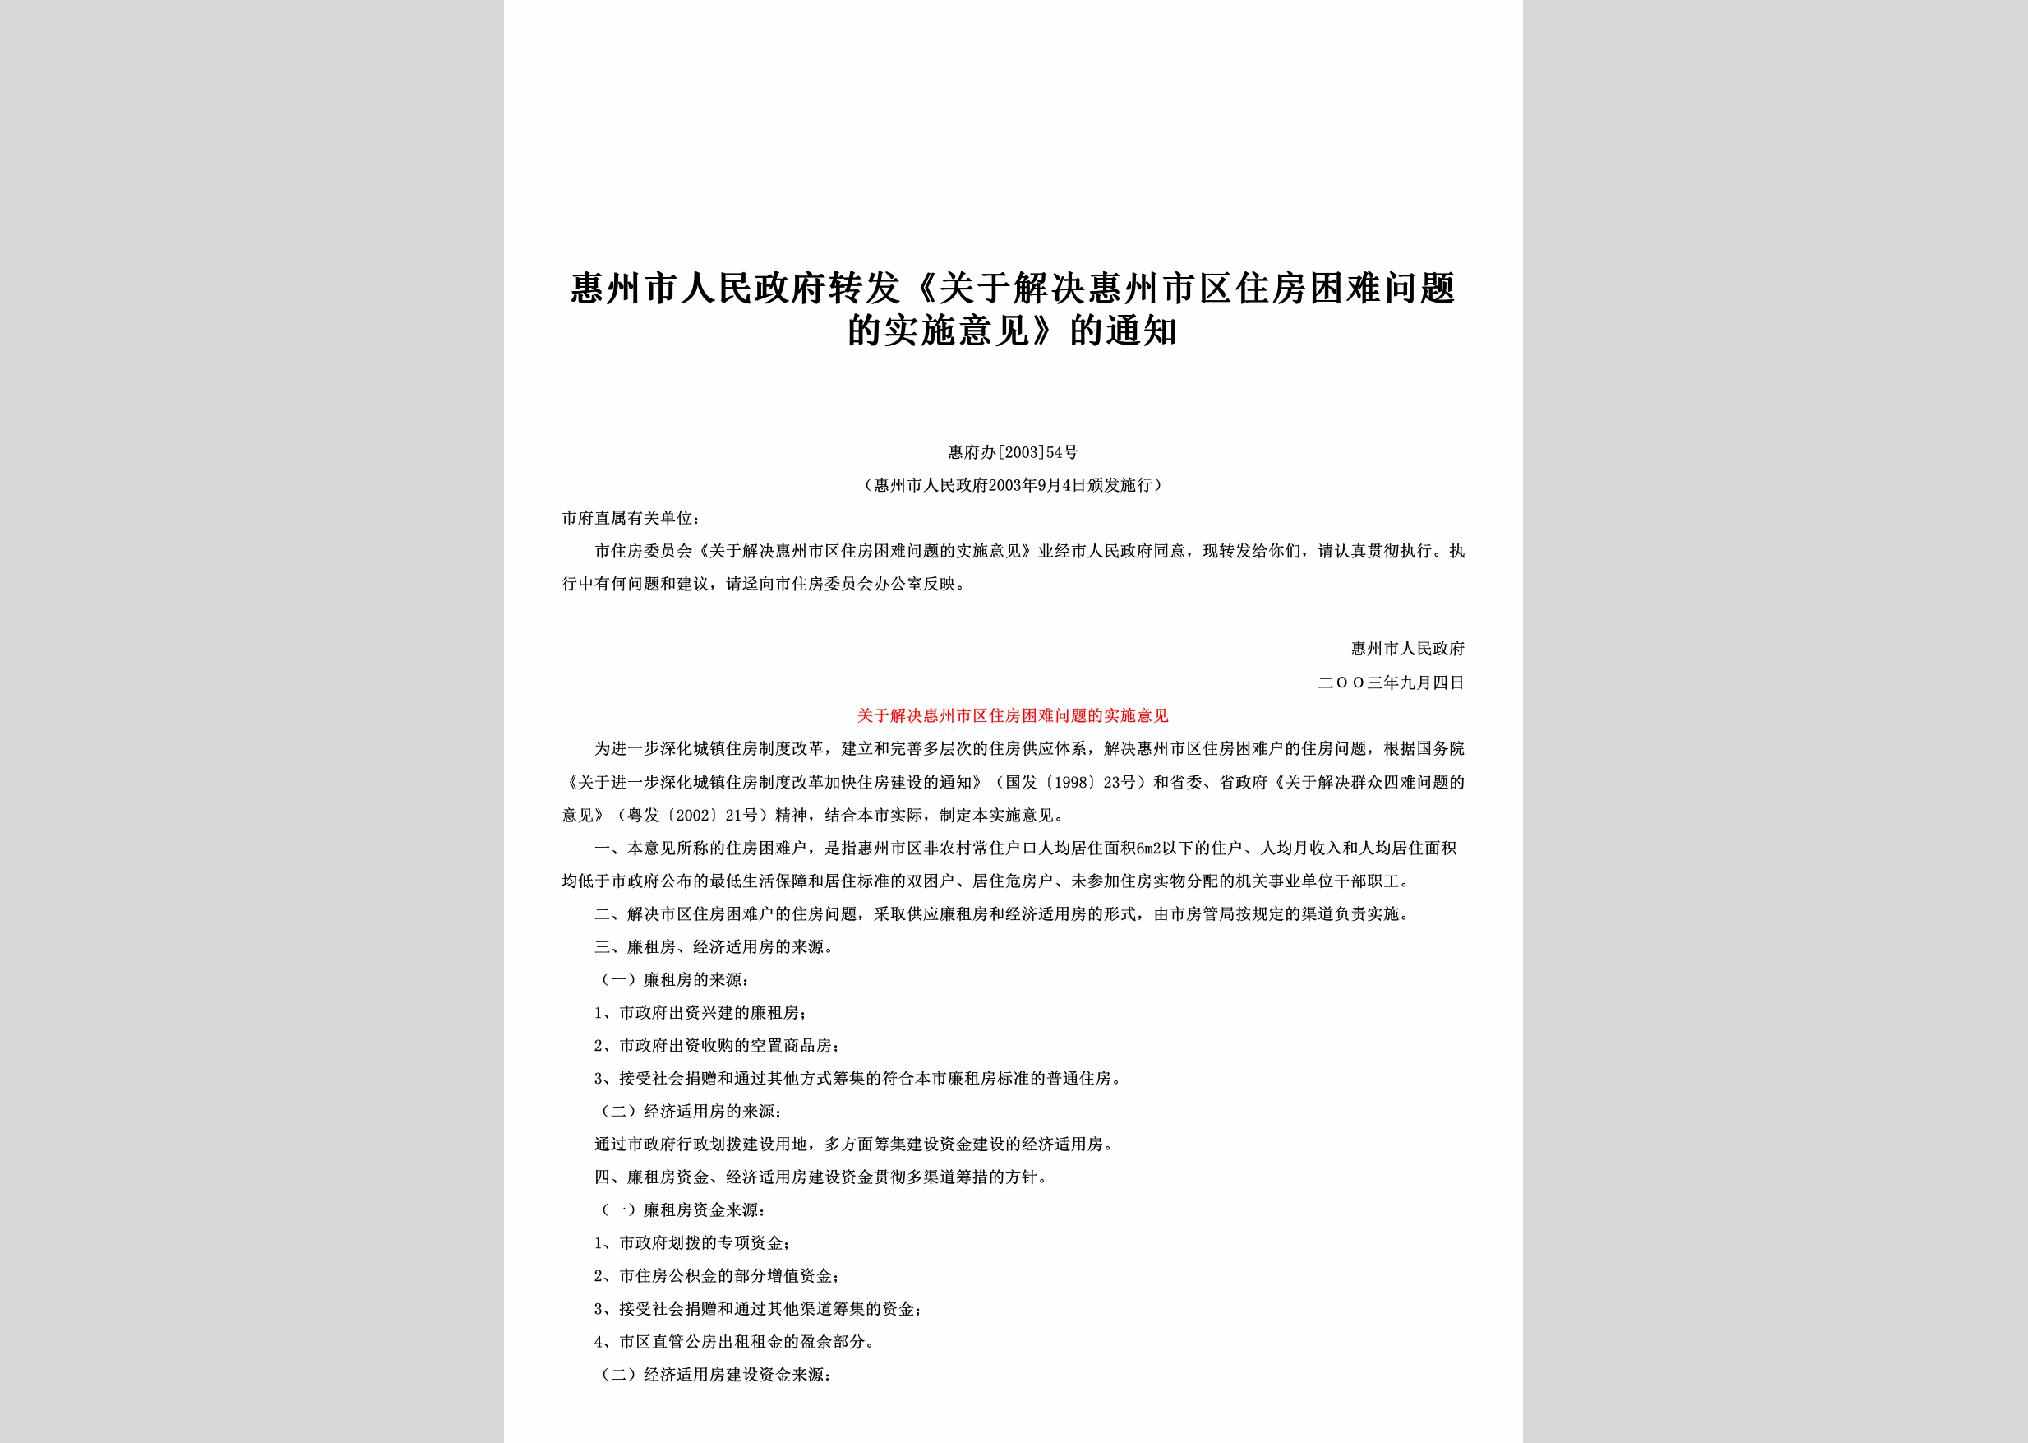 惠府办[2003]54号：转发《关于解决惠州市区住房困难问题的实施意见》的通知